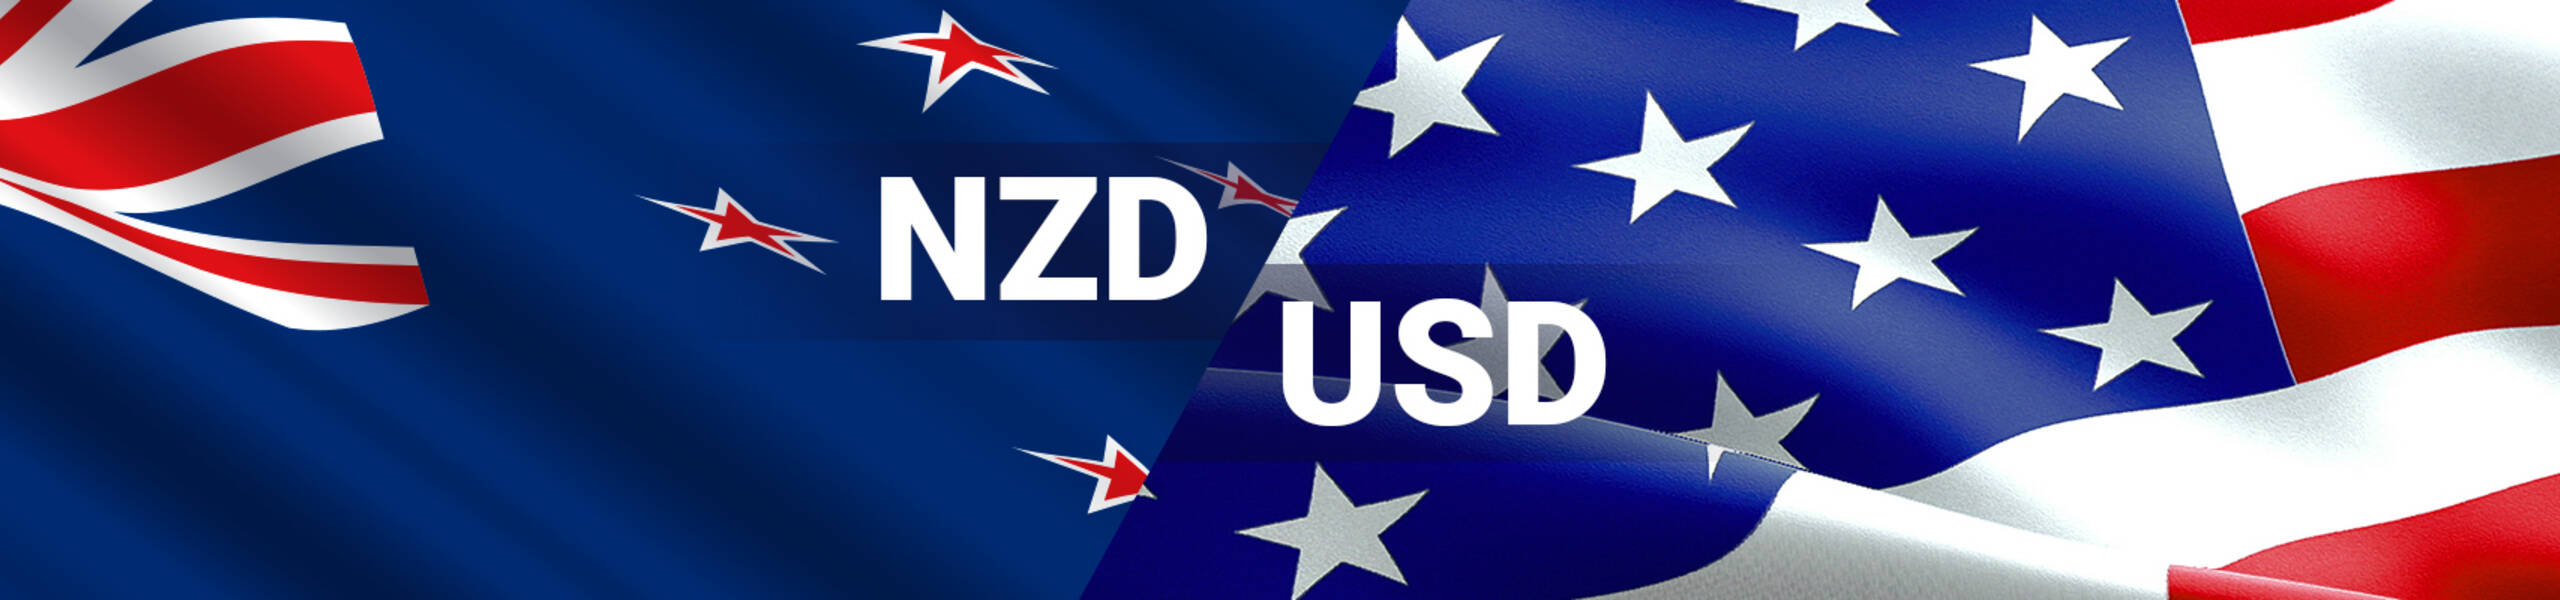 NZD/USD: ยังอยู่ในทิศทางขาขึ้นระยะสั้น